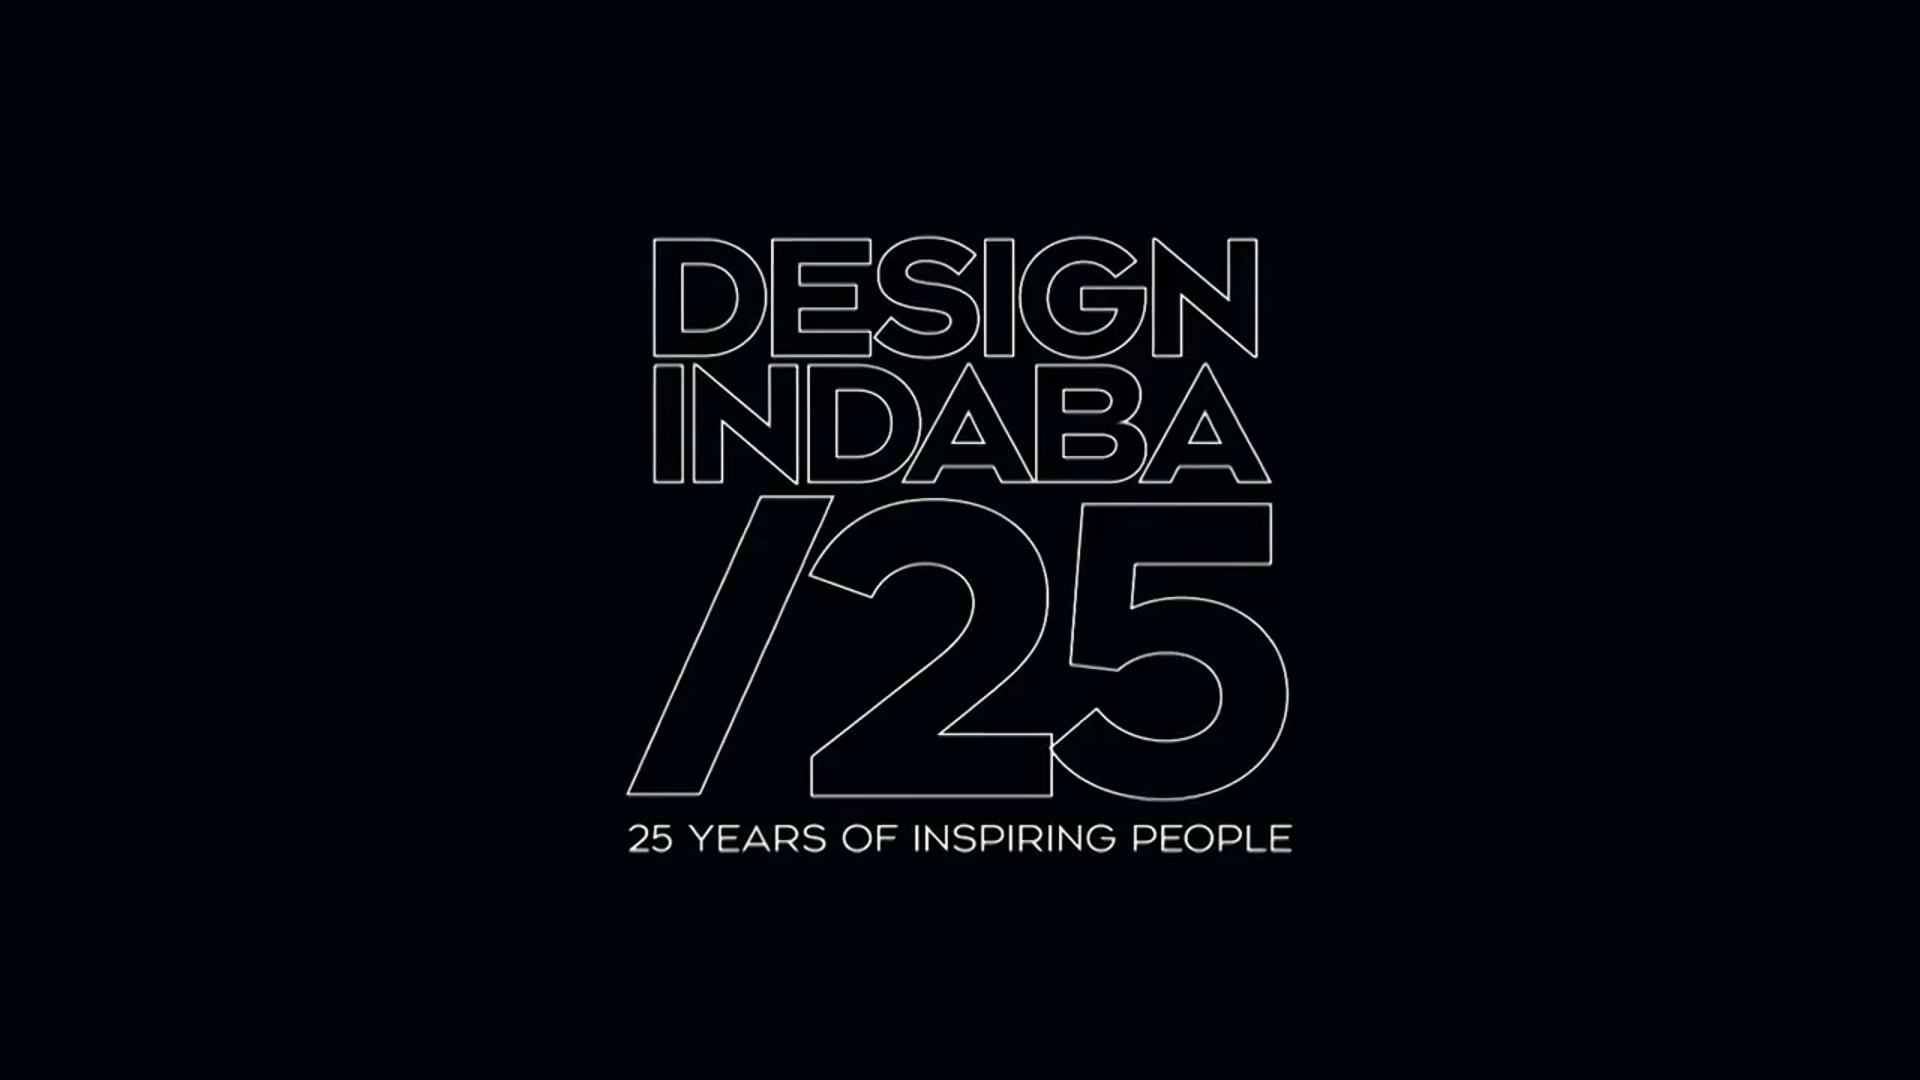 Chad Hanning / Design Indaba 2020